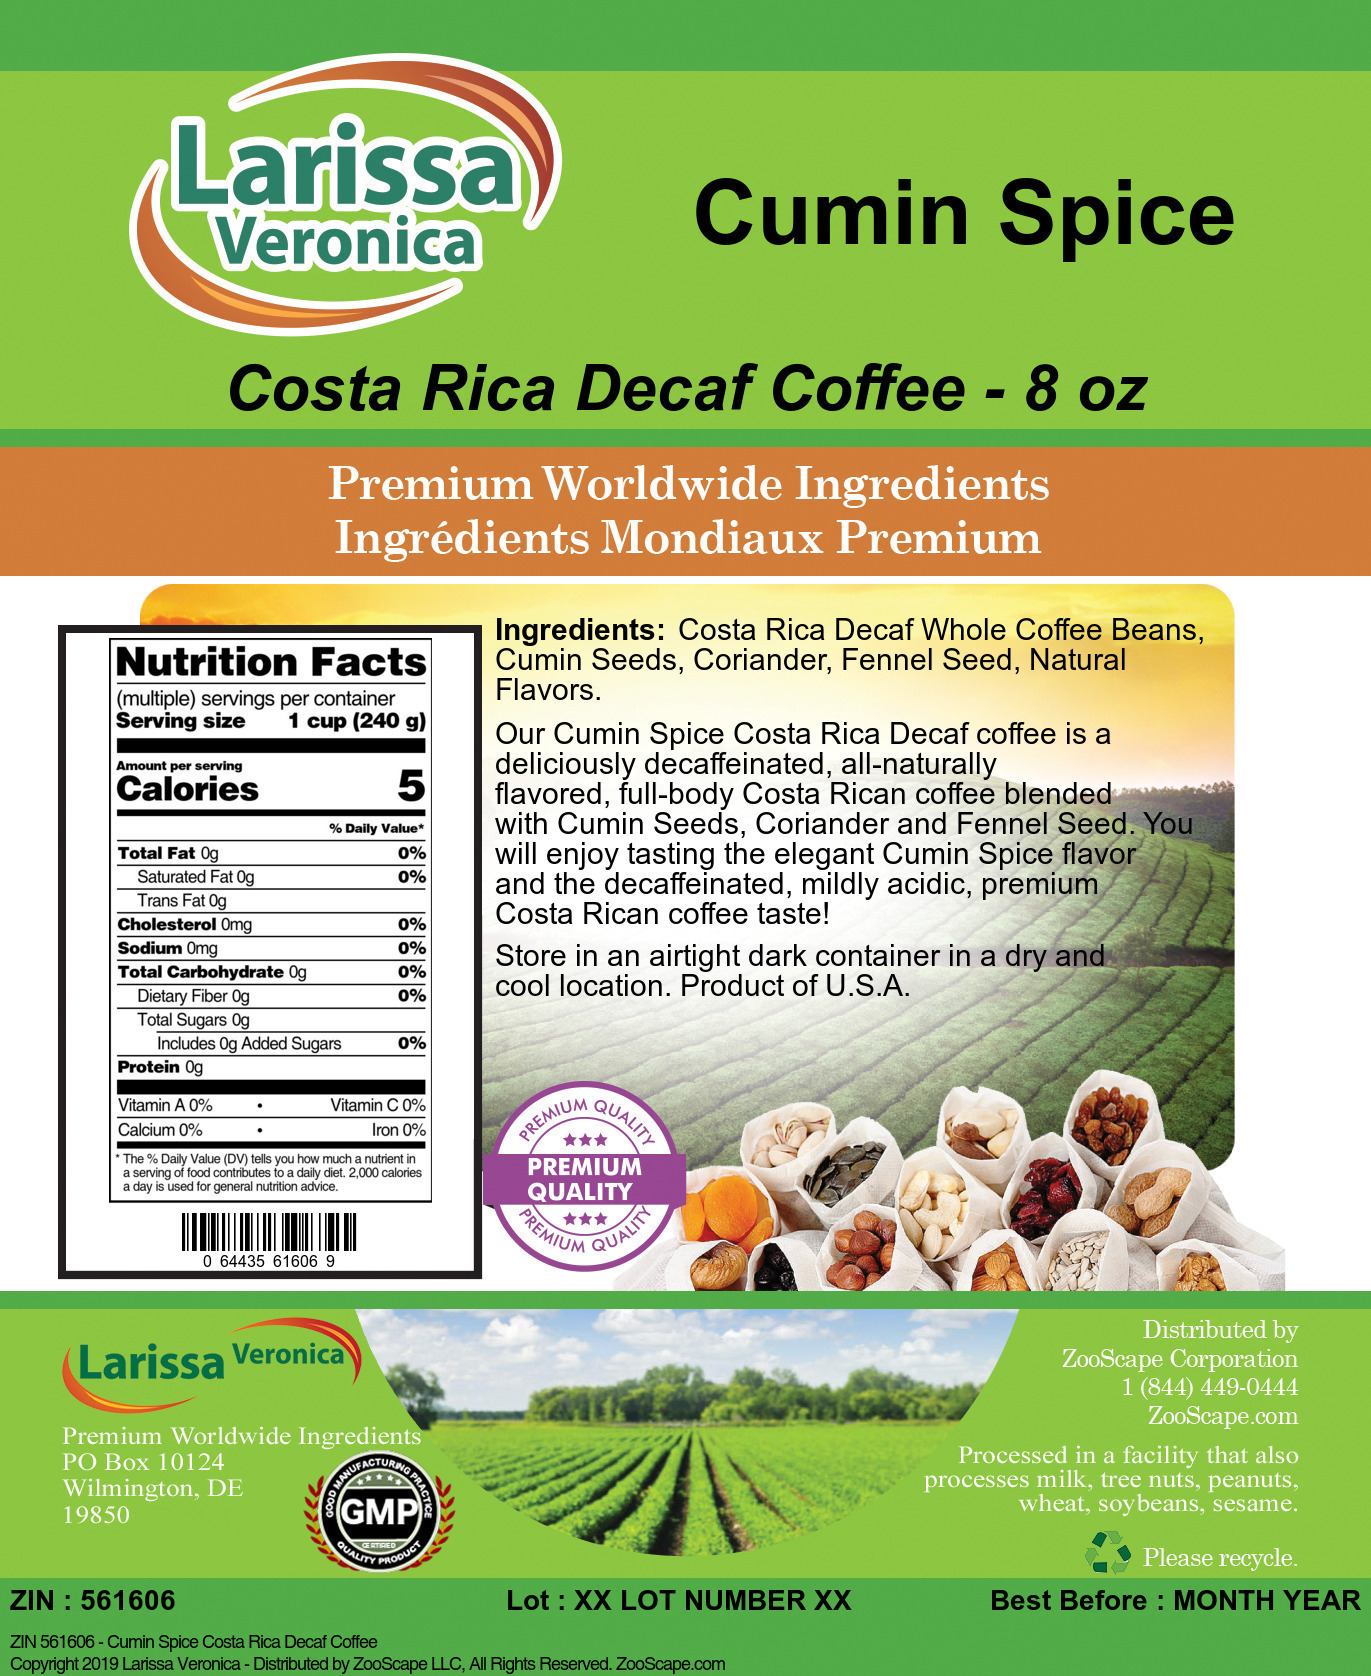 Cumin Spice Costa Rica Decaf Coffee - Label